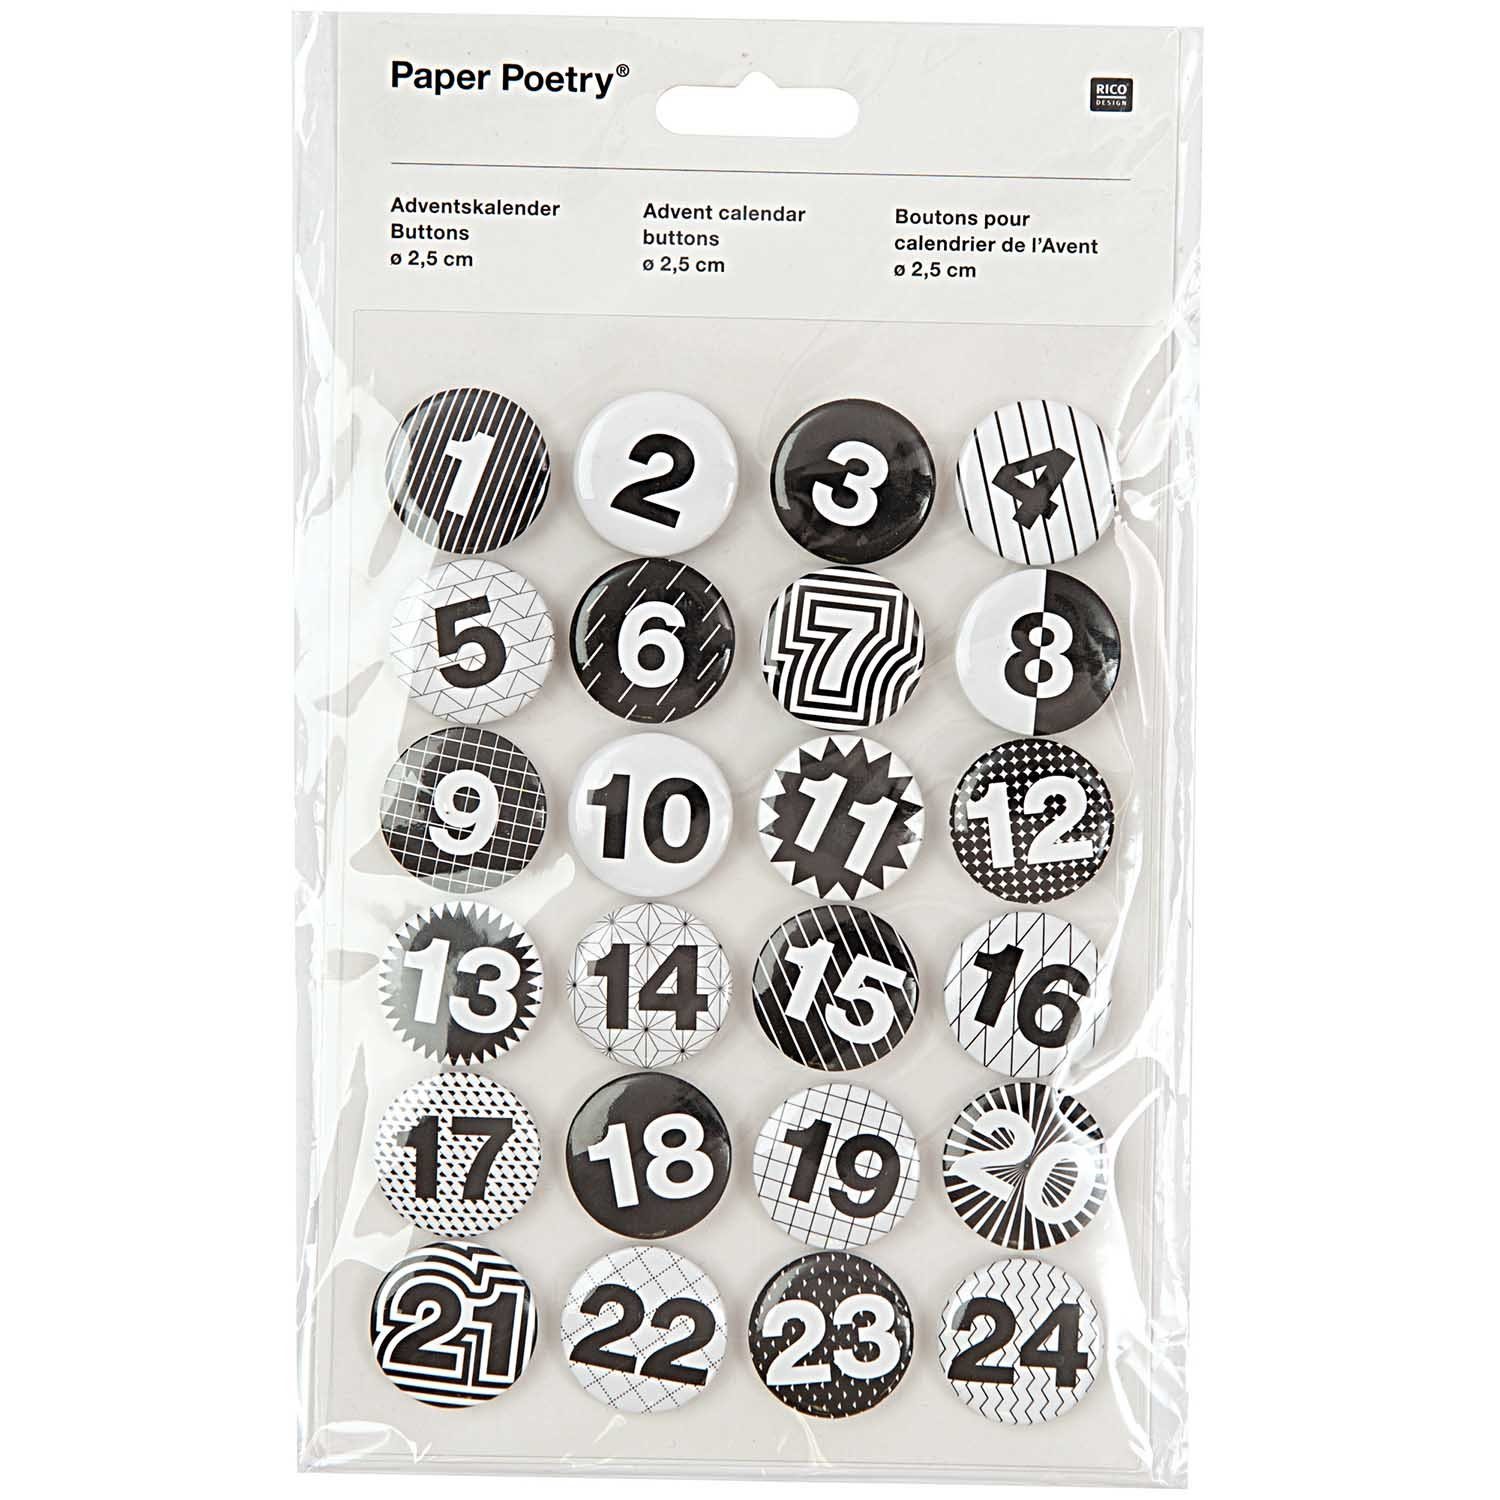 Set Adventskalender Buttons Design Button Poetry Rico Paper 24 Stück schwarz-weiß Zahlen